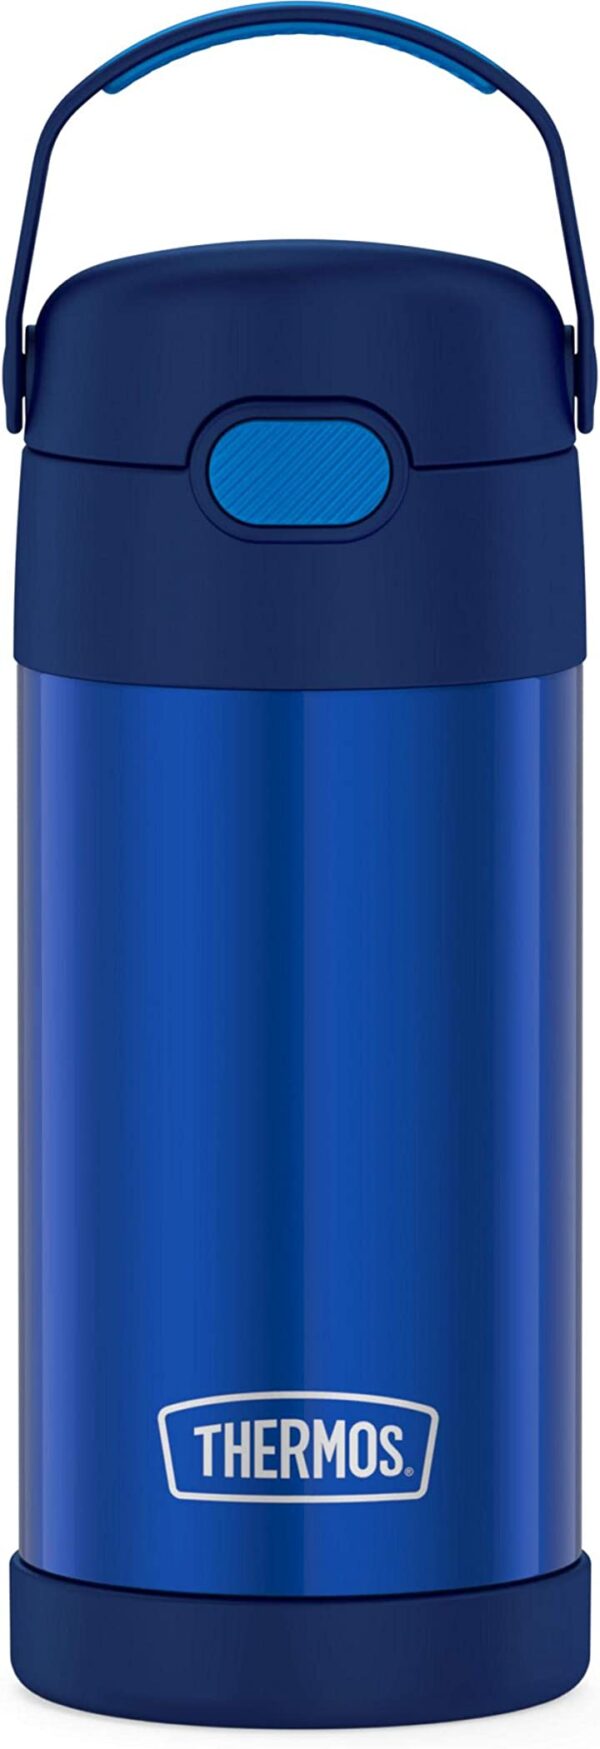 زجاجة مياه فانتينر F4016VI6 من ثيرموس سعة 12 اونصة - لون بنفسجي احصل على زجاجة مياه فانتينر F4016VI6 من ثيرموس اللون البنفسجي، سعة 12 اونصة، مثالية للرحلات والنزهات في الطبيعة. اطلبها الآن!